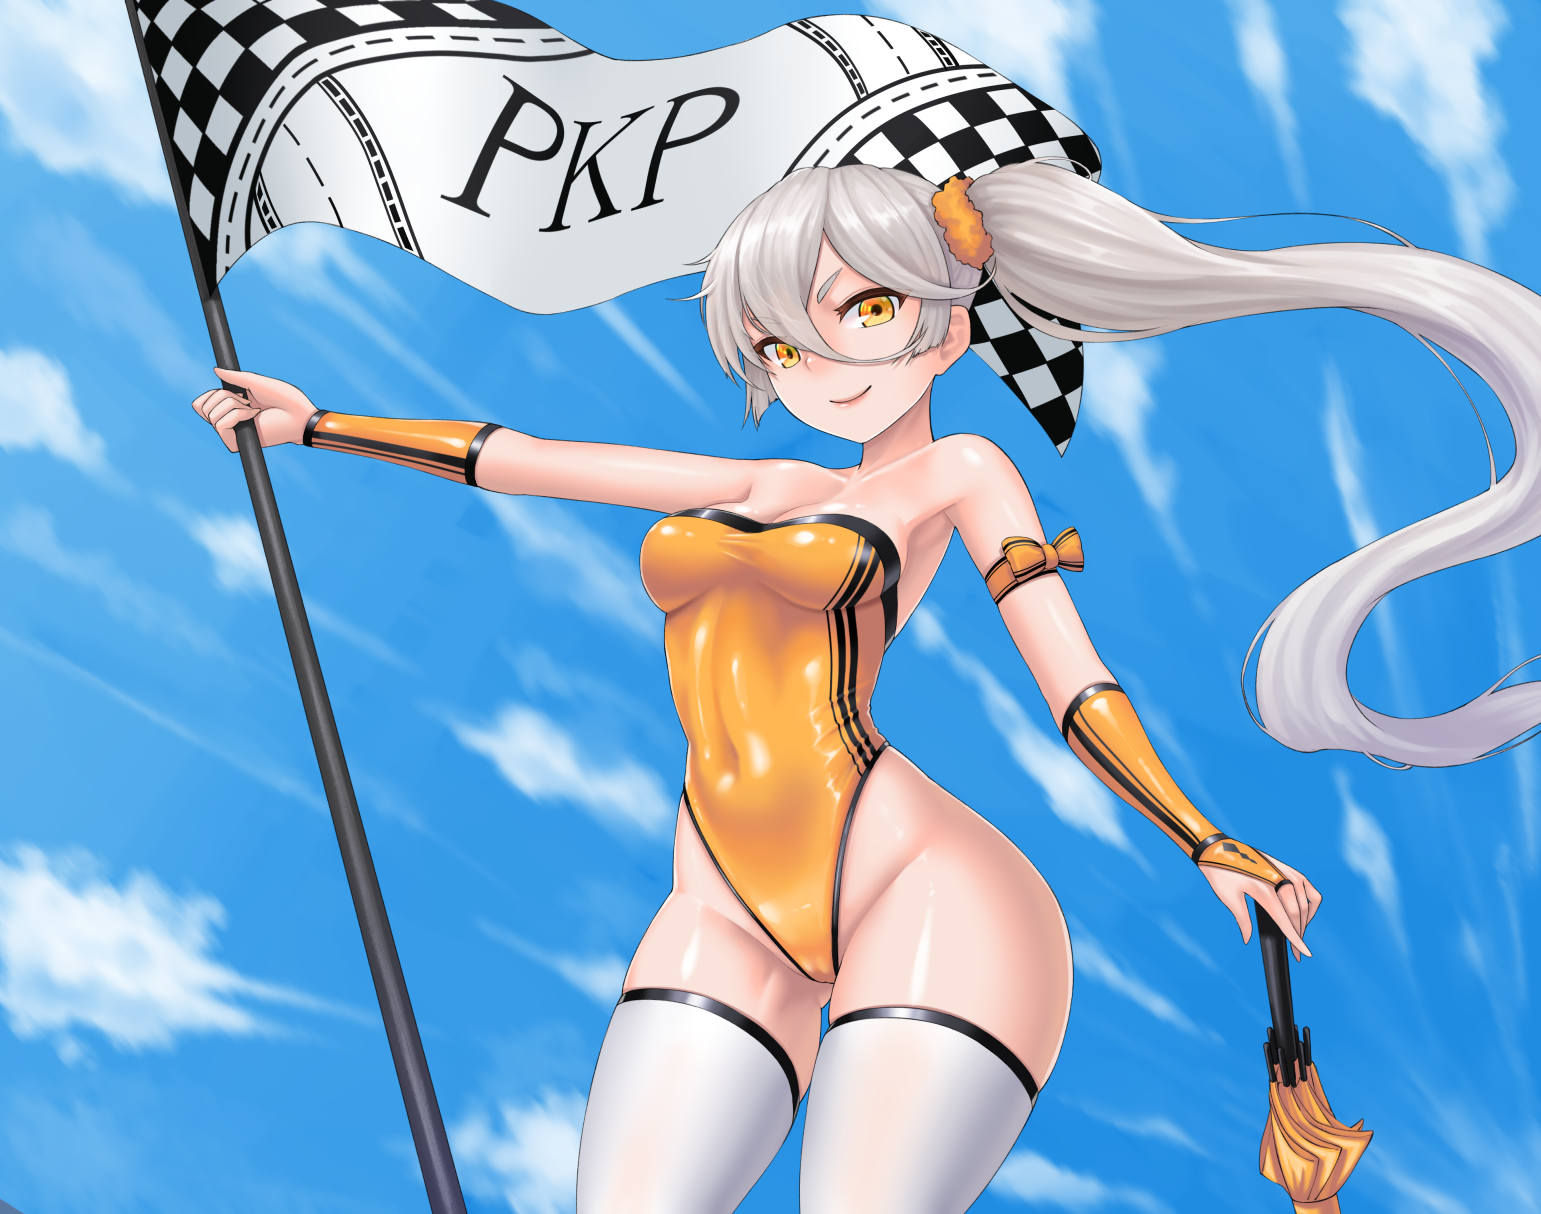 PKP - Anime art, Girls frontline, Pkp